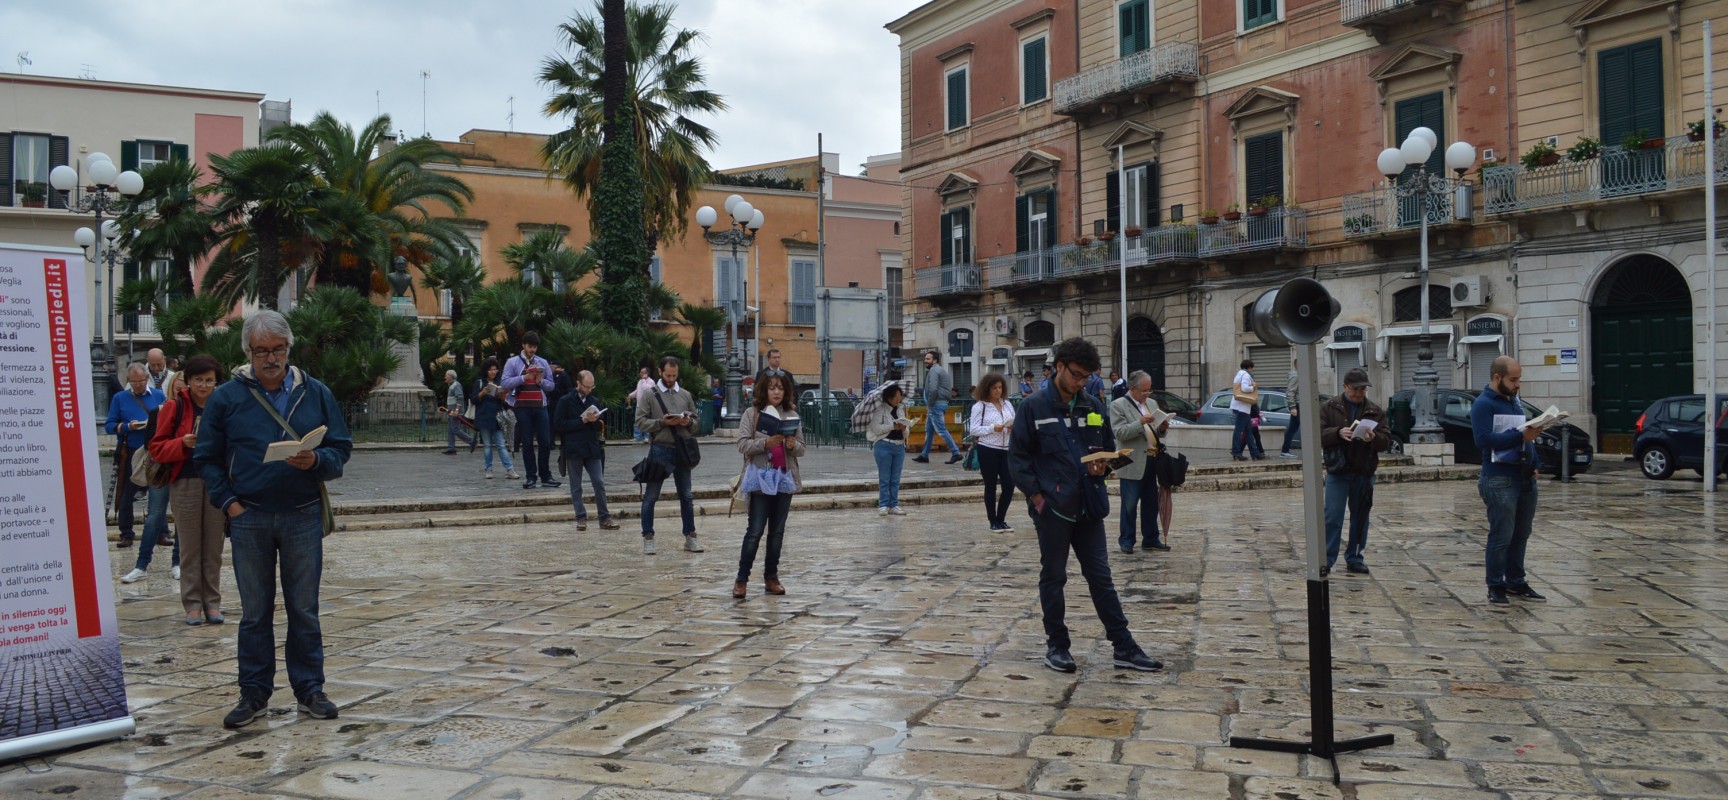 Sentinelle in piedi: ” Al nostro fianco in piazza a Bari anche una coppia omosessuale”